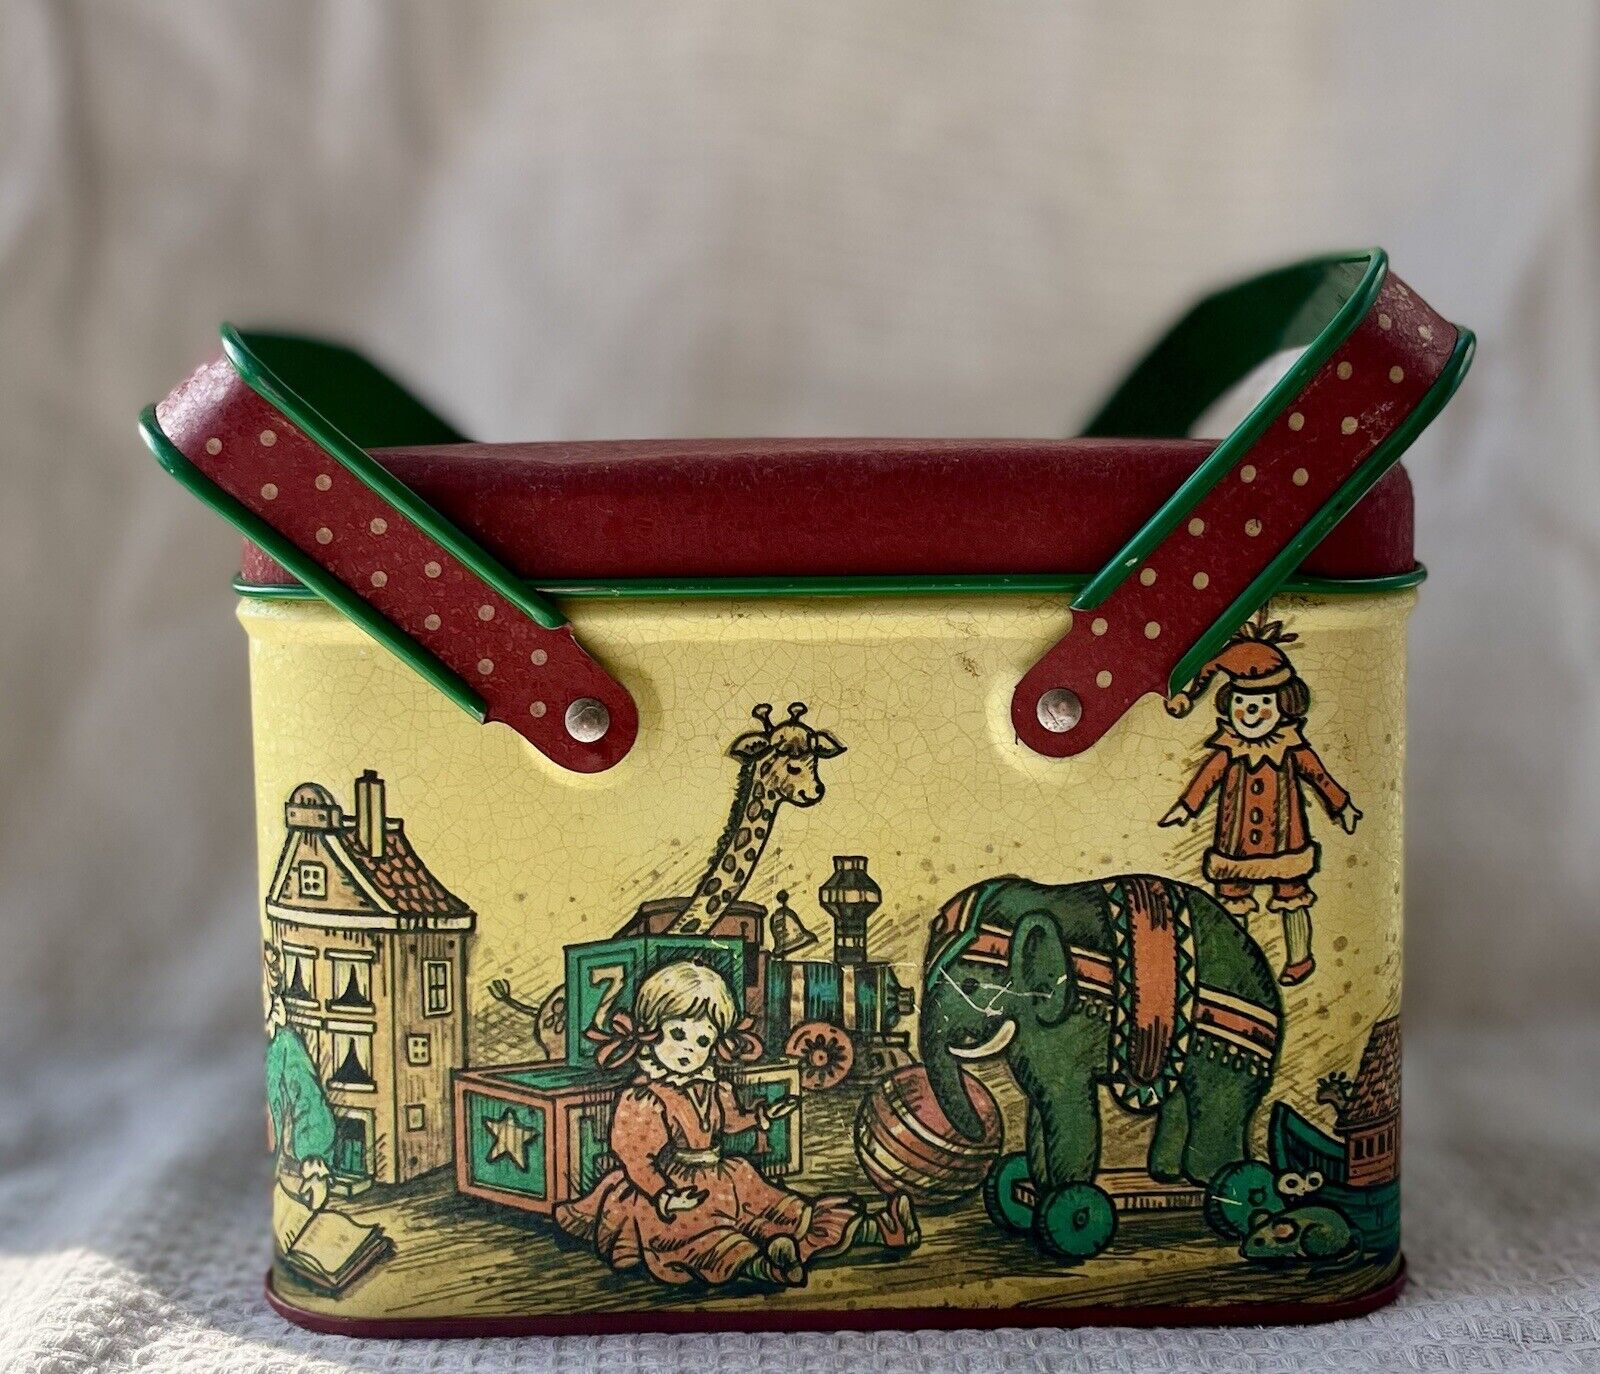 Made In The U.S.A Potpourri Rare Vintage Multicolor Tin Container Decorative Box